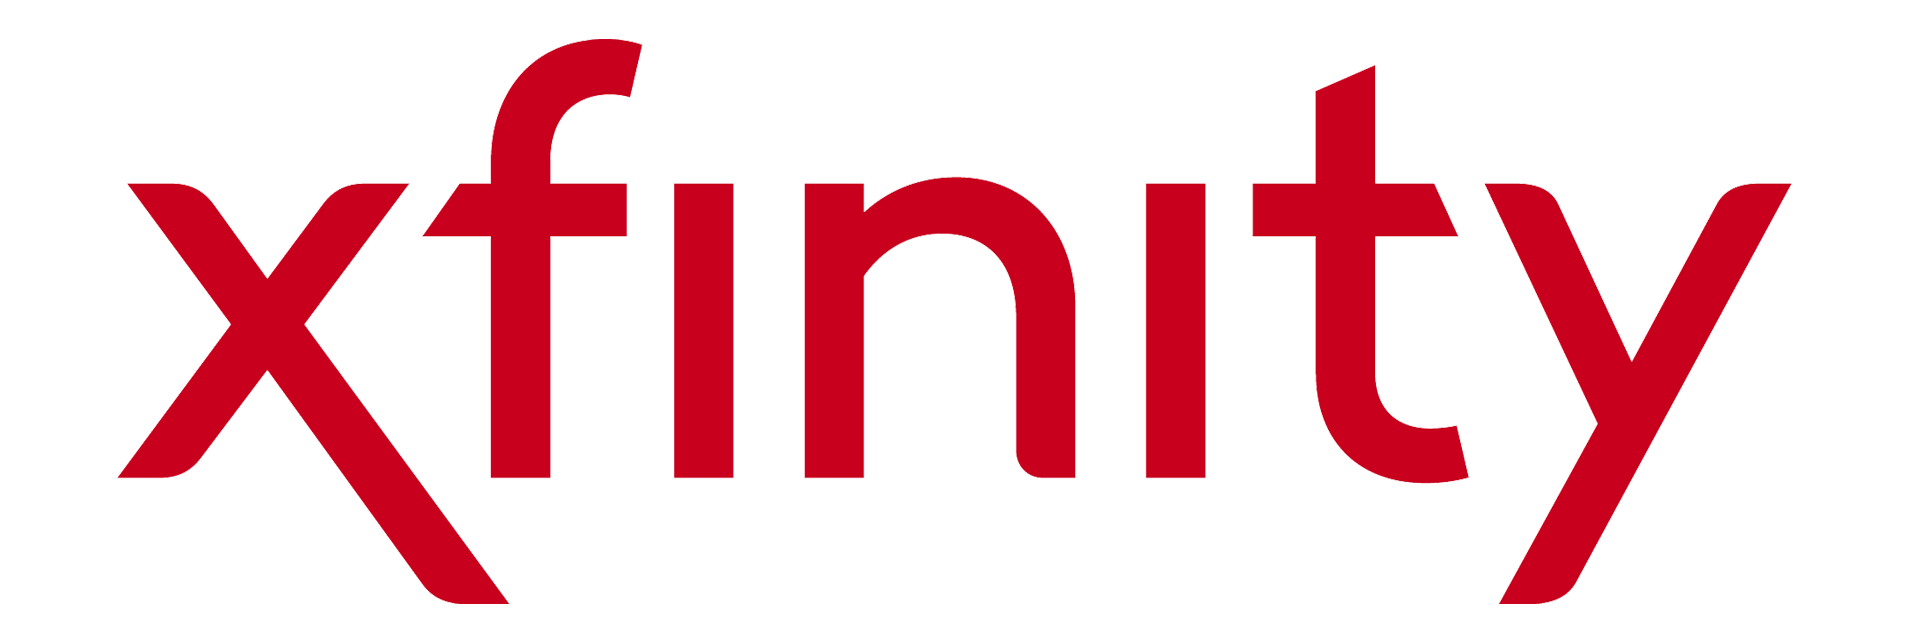 Xfinity_logo_2017_red_RGB